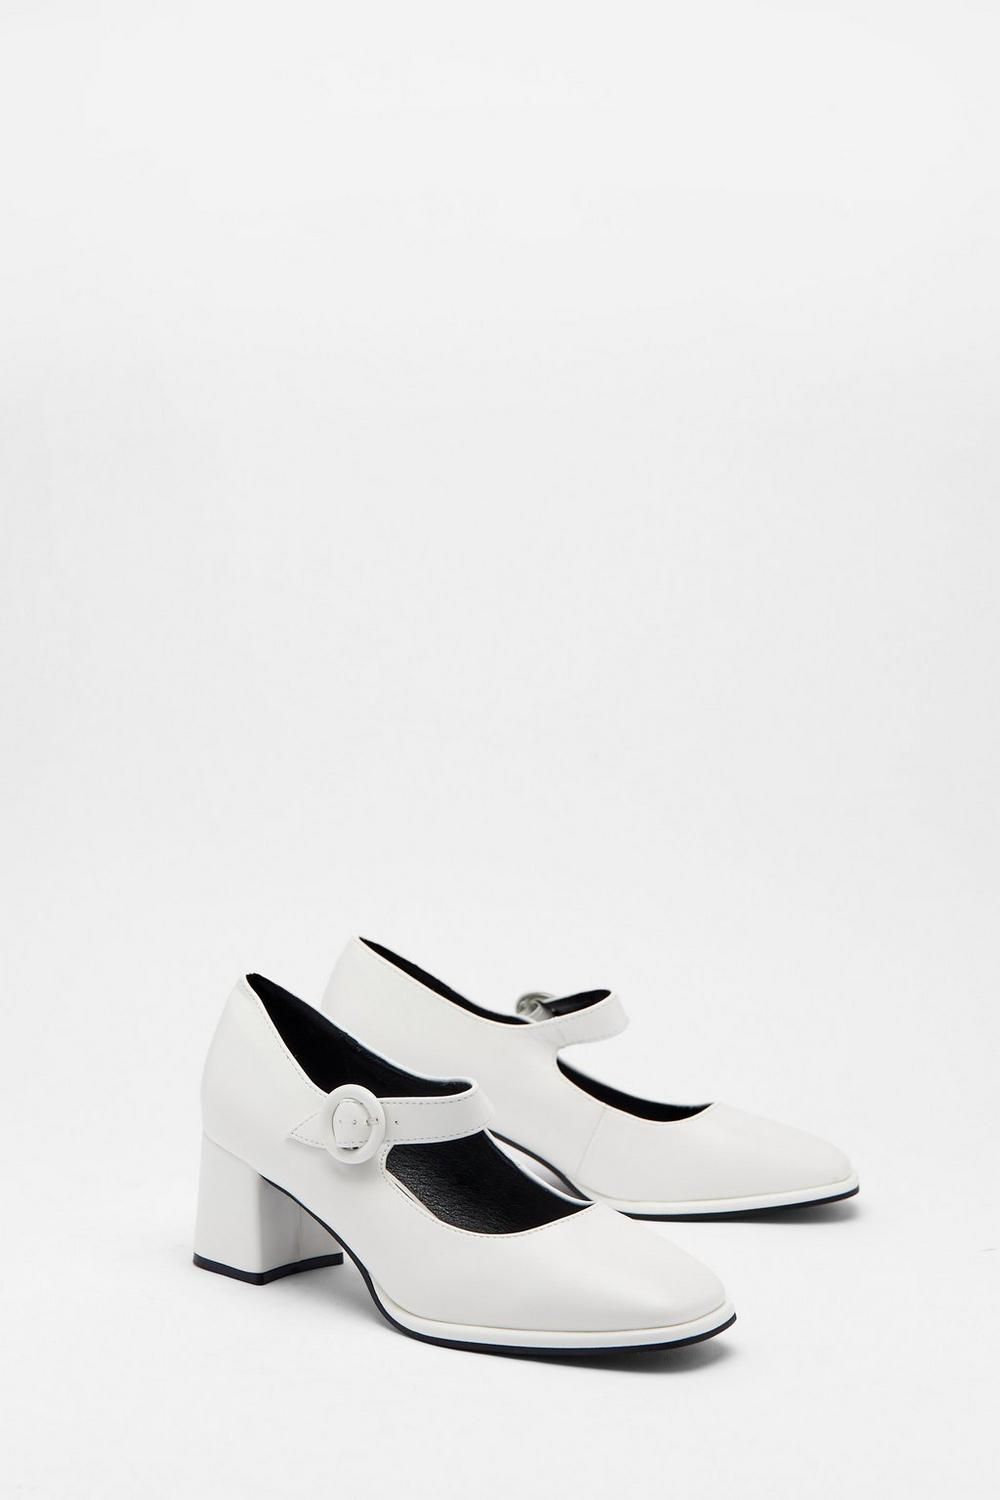 Mary Jane Platform Heels | BOOGZEL CLOTHING – Boogzel Clothing